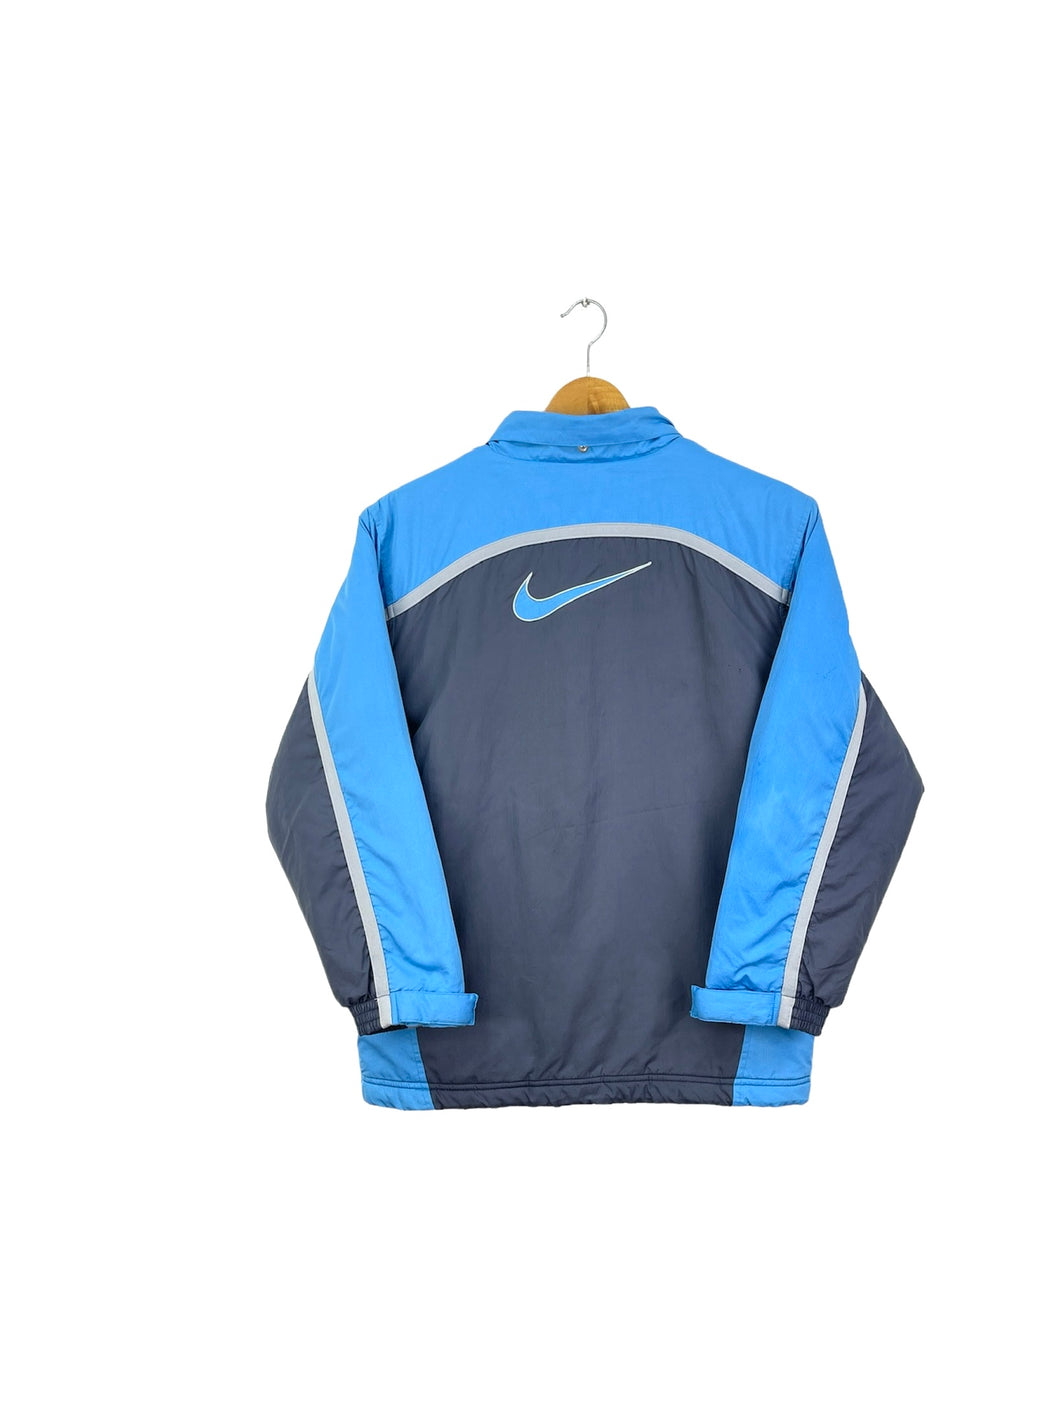 Nike Jacket - XSmall